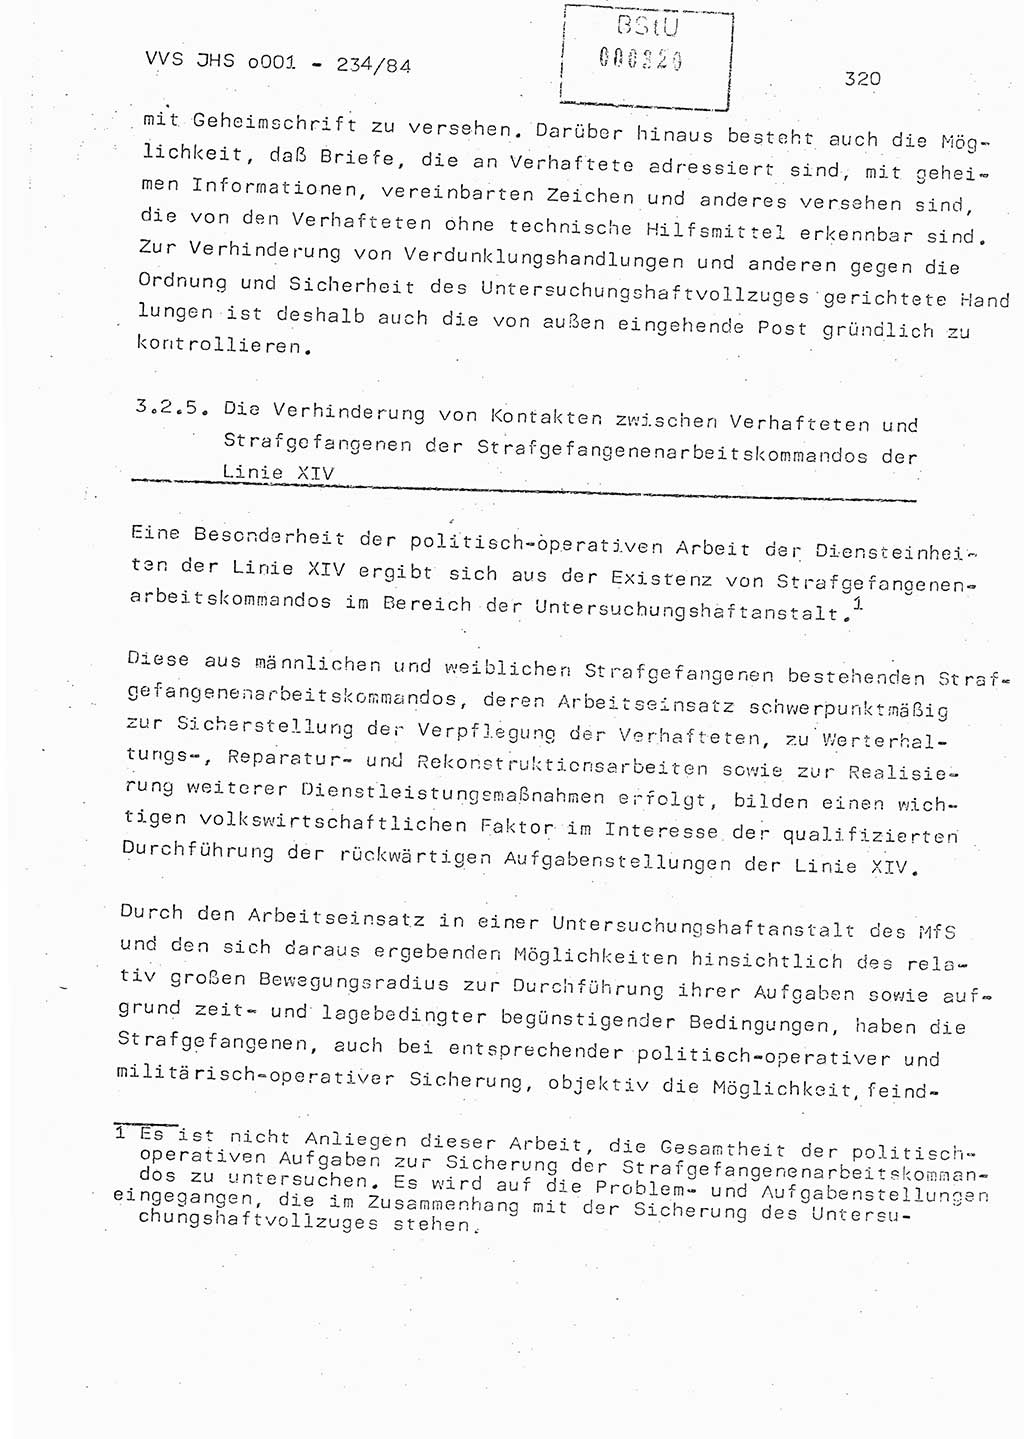 Dissertation Oberst Siegfried Rataizick (Abt. ⅩⅣ), Oberstleutnant Volkmar Heinz (Abt. ⅩⅣ), Oberstleutnant Werner Stein (HA Ⅸ), Hauptmann Heinz Conrad (JHS), Ministerium für Staatssicherheit (MfS) [Deutsche Demokratische Republik (DDR)], Juristische Hochschule (JHS), Vertrauliche Verschlußsache (VVS) o001-234/84, Potsdam 1984, Seite 320 (Diss. MfS DDR JHS VVS o001-234/84 1984, S. 320)